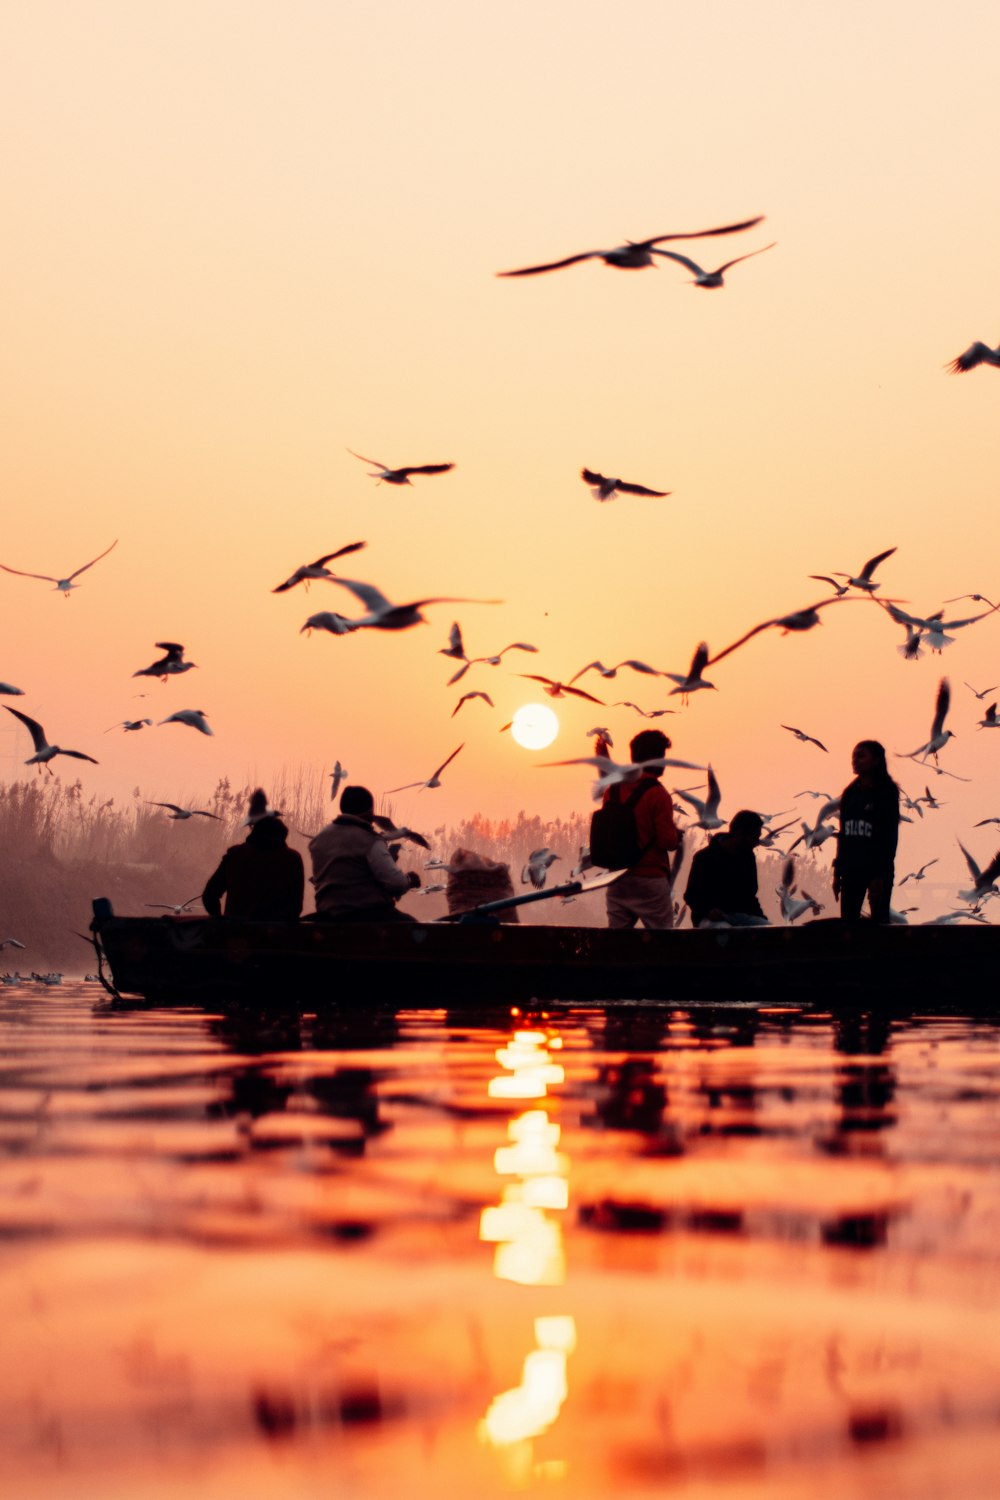 un gruppo di persone in una barca con uccelli che volano sopra di loro